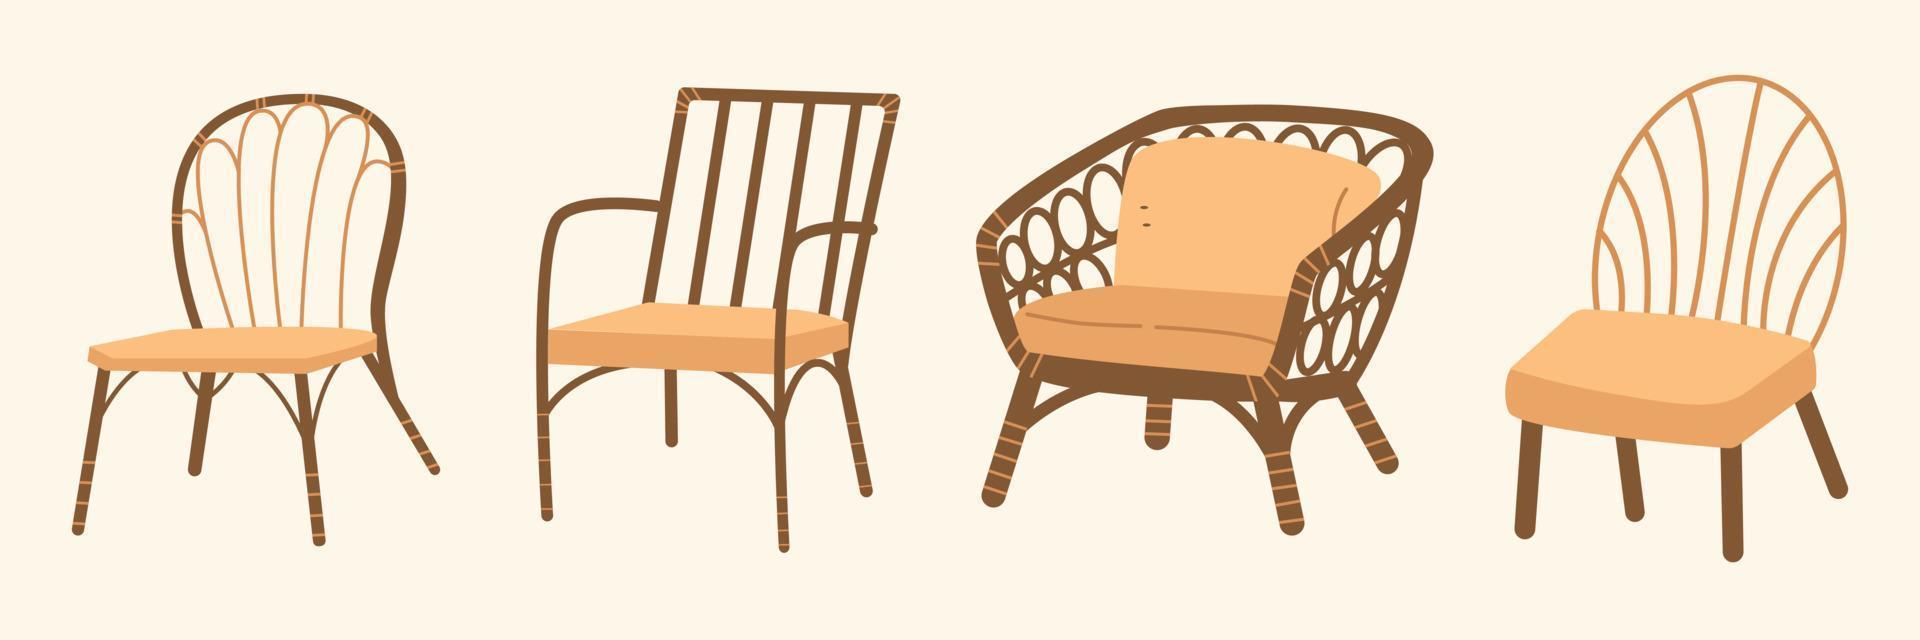 móveis vintage em estilo de design boho. ilustração boêmia para elementos de design. cadeiras antigas de estilo clássico vetor